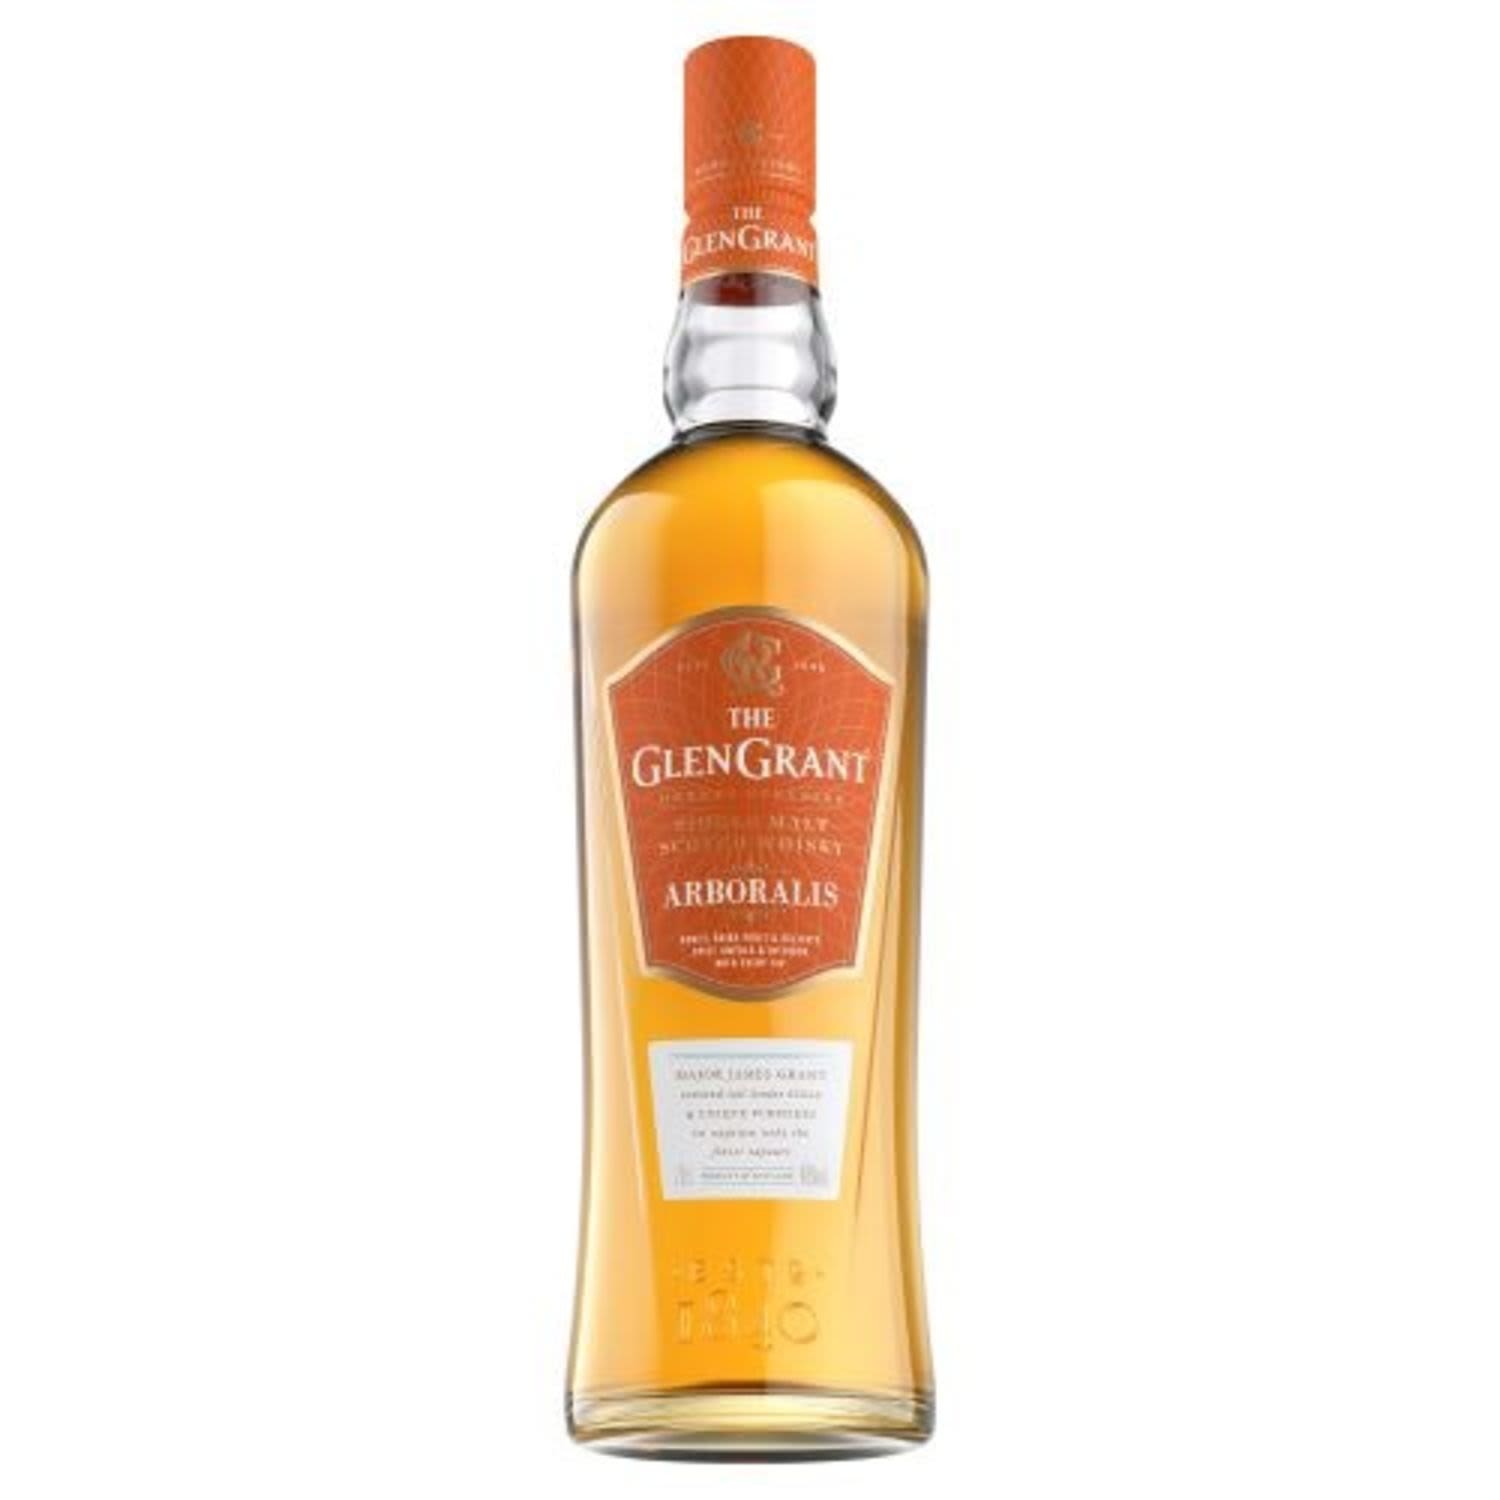 The Glen Grant Arboralis SIngle Malt Scotch Whisky 700mL Bottle